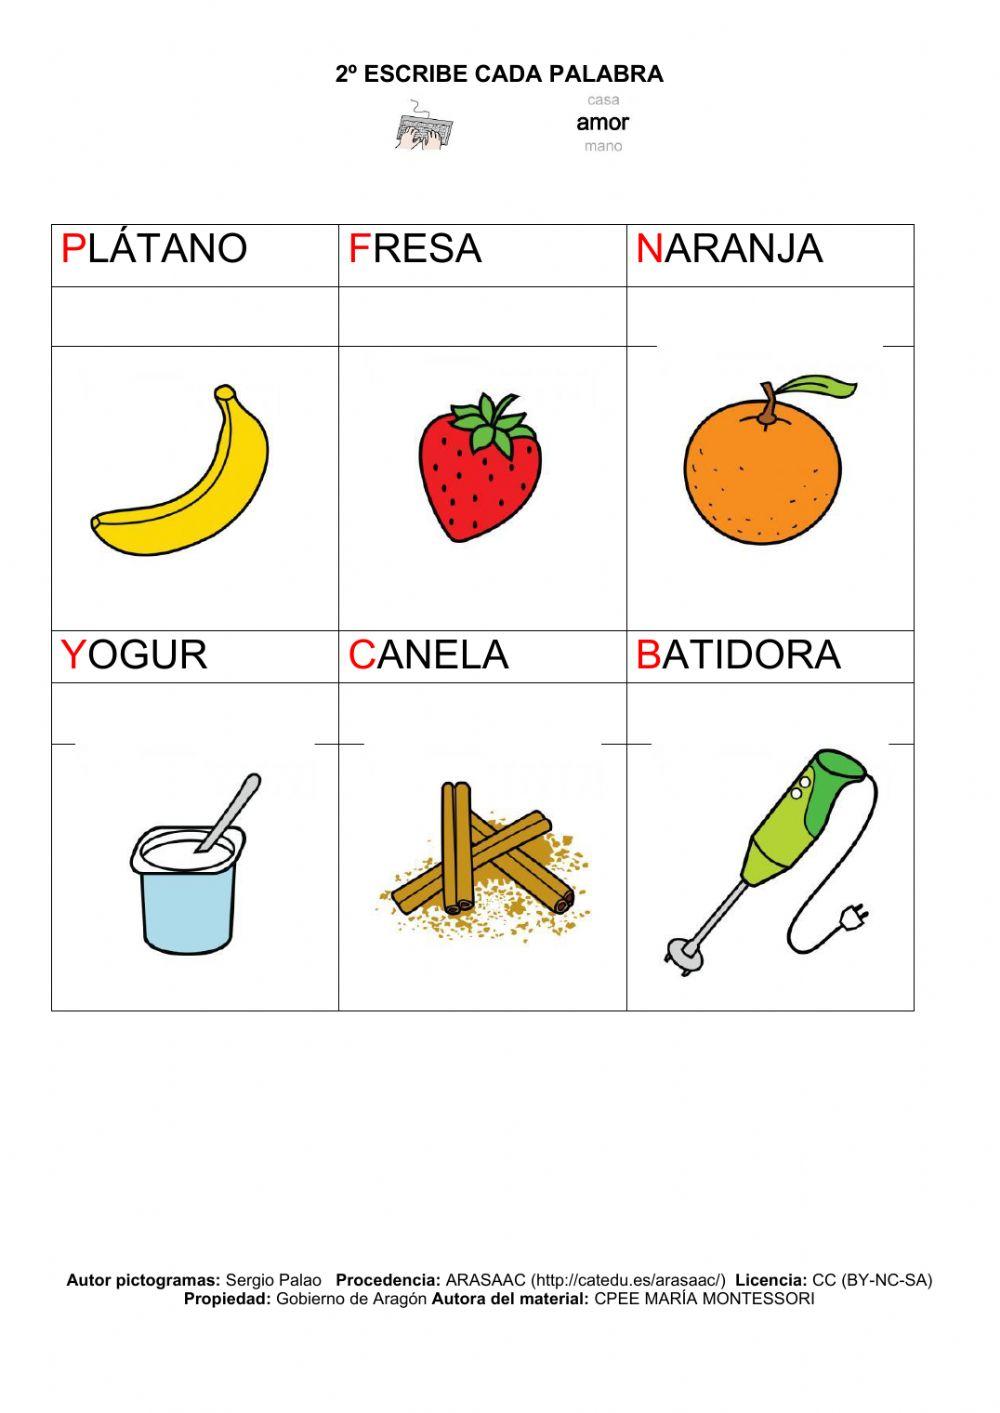 Trabajamos las frutas y el vocabulario de la receta.